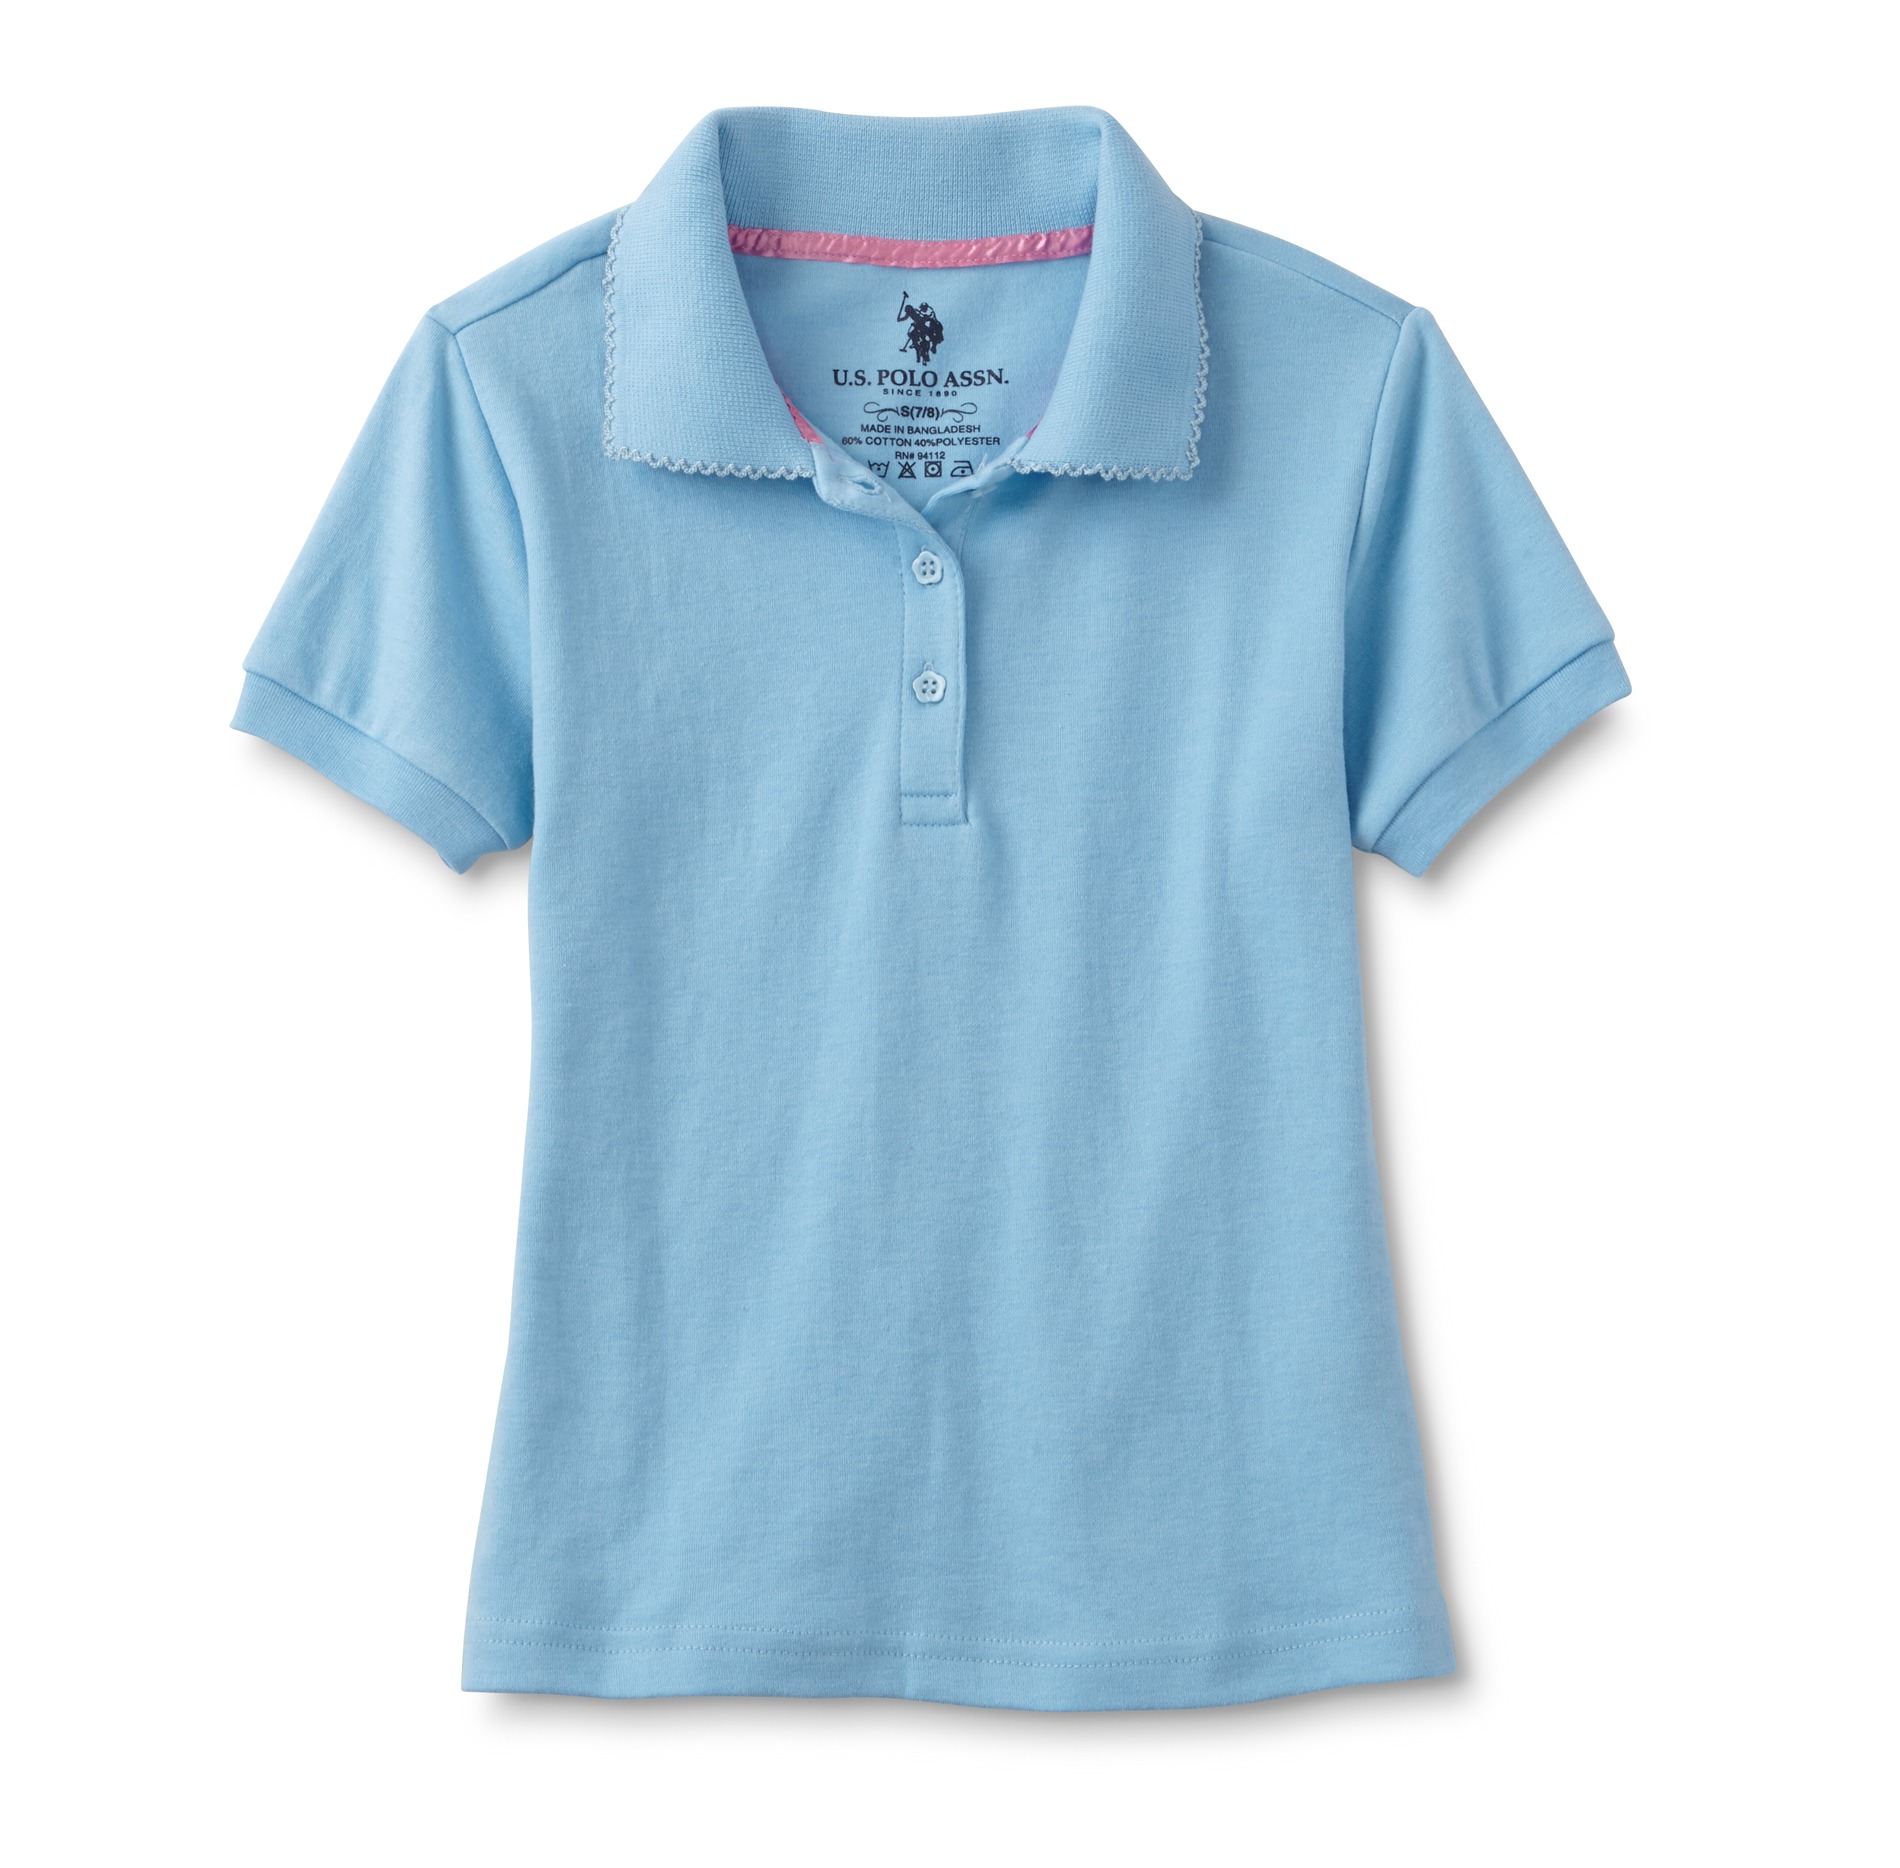 U.S. Polo Assn. Girl's Polo Shirt